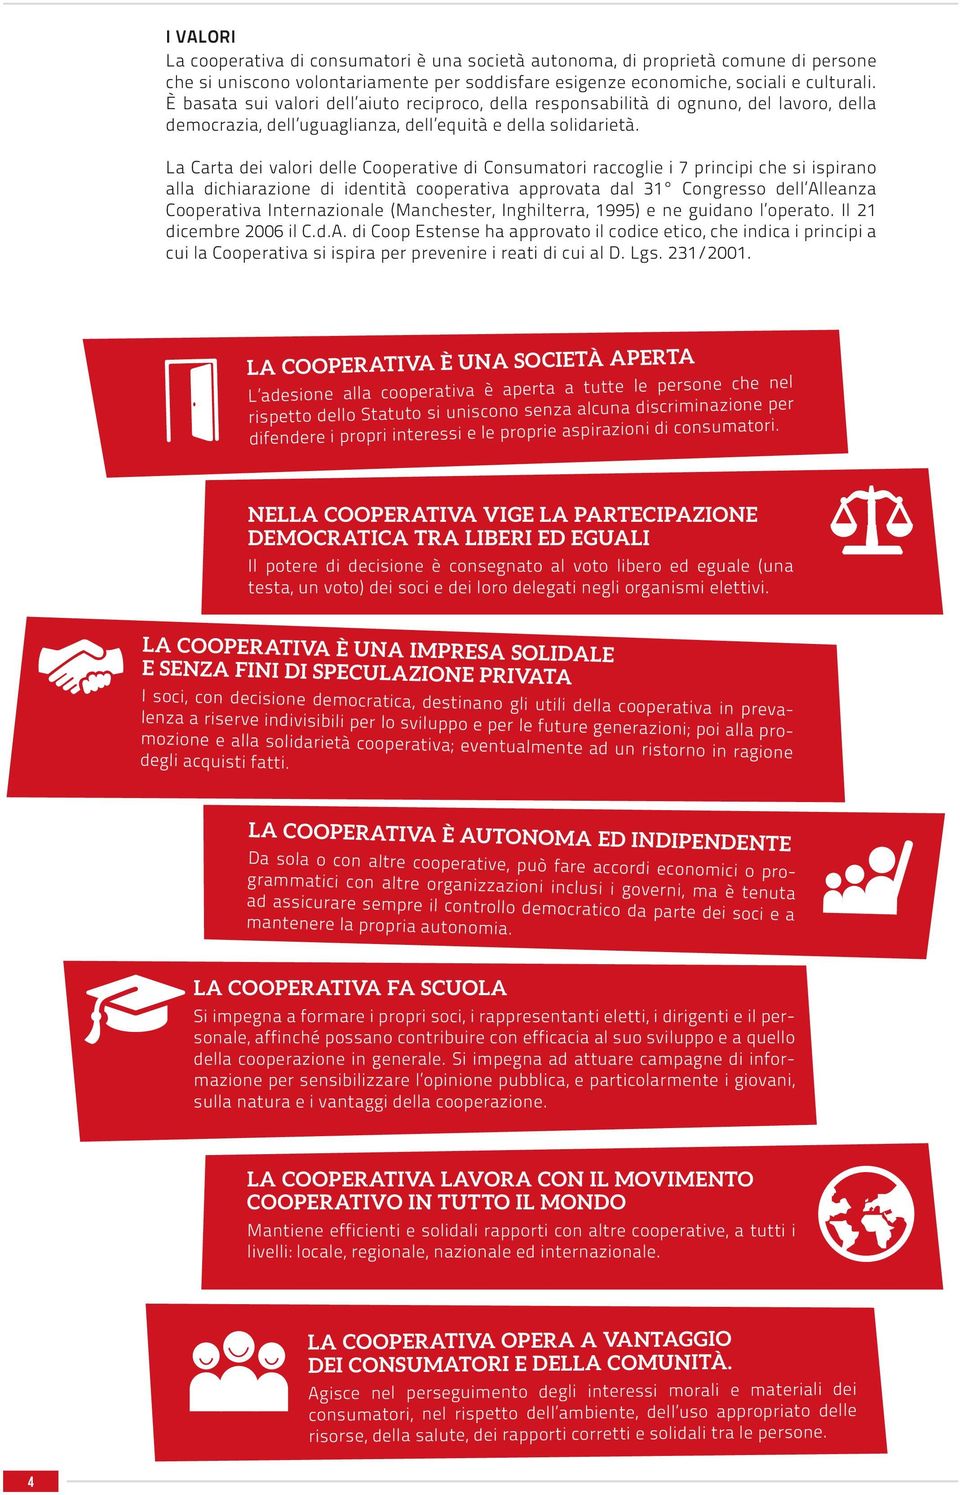 La Carta dei valori delle Cooperative di Consumatori raccoglie i 7 principi che si ispirano alla dichiarazione di identità cooperativa approvata dal 31 Congresso dell Alleanza Cooperativa